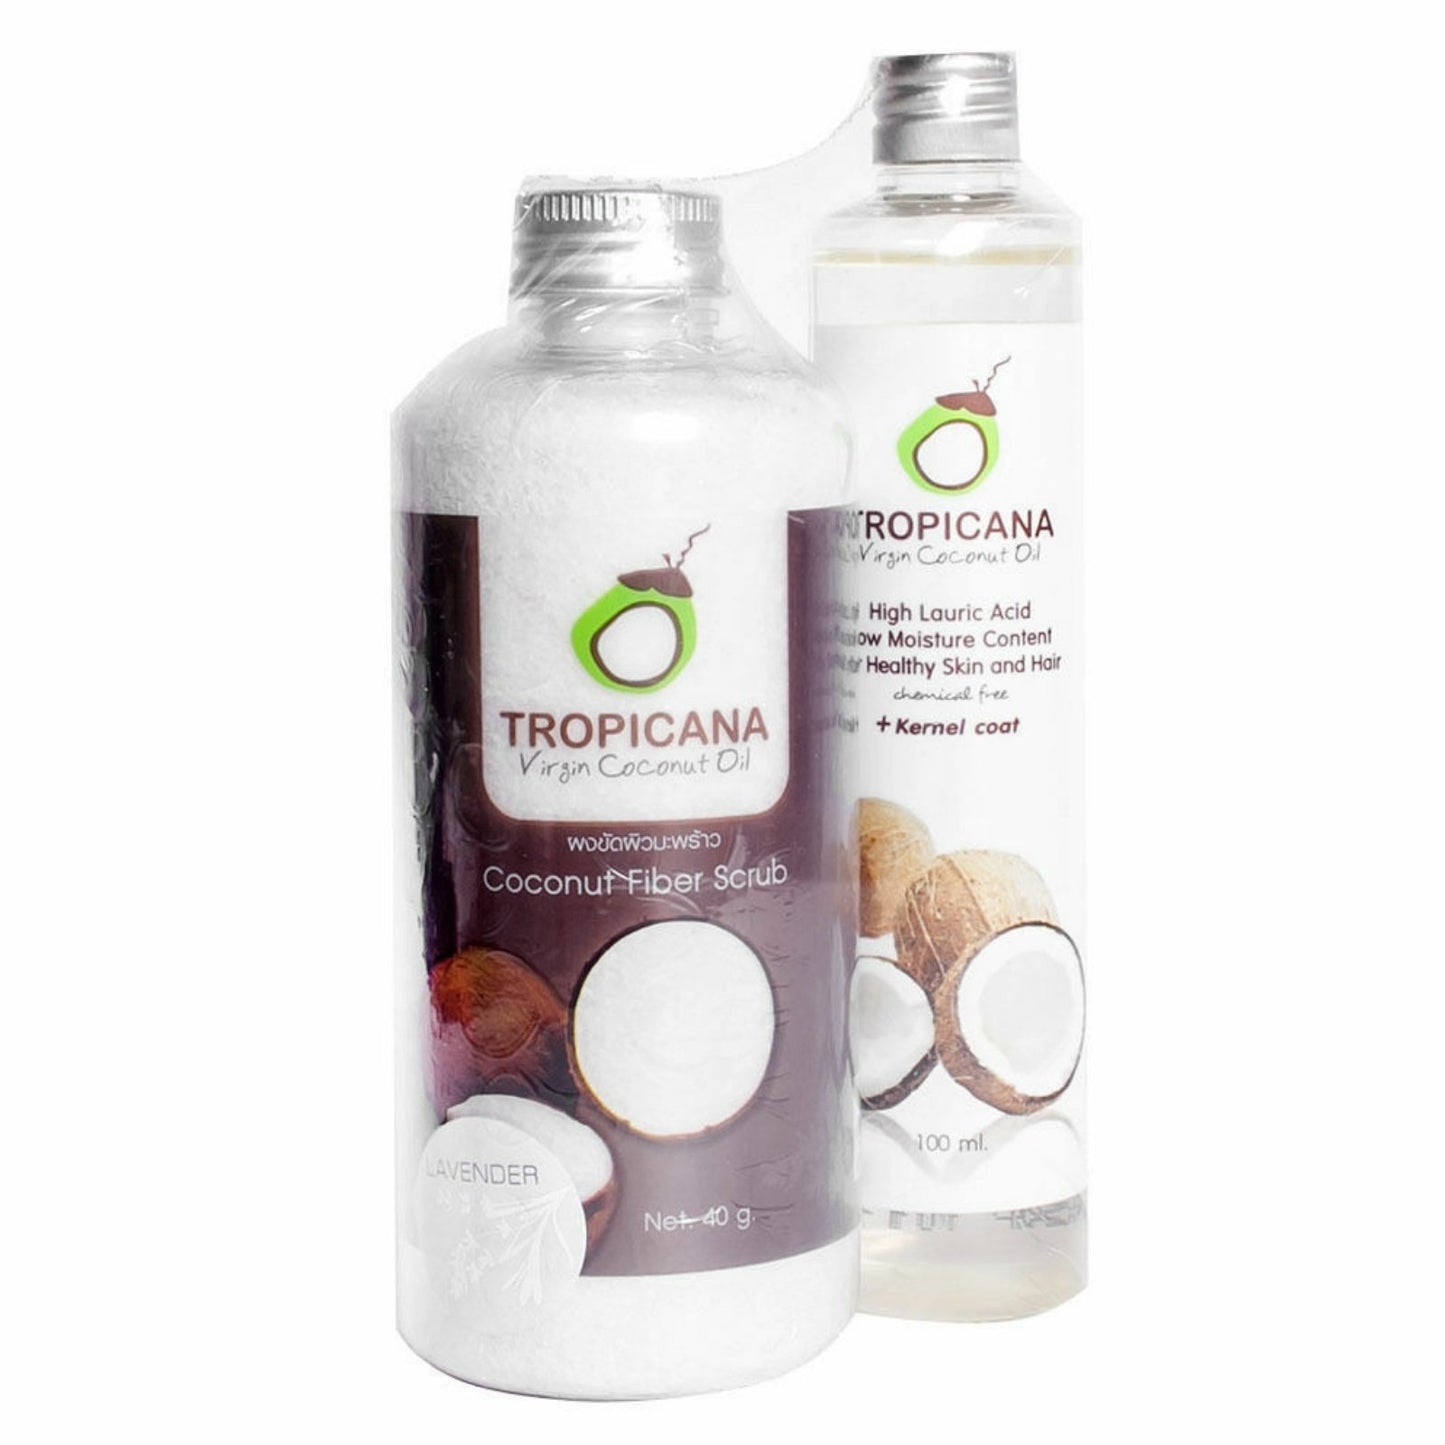 Tropicana Coconut Fiber Scrub + Organic Cold Pressed Virgin Coconut Oil 100ml [13 AUG 2020] - WERONE